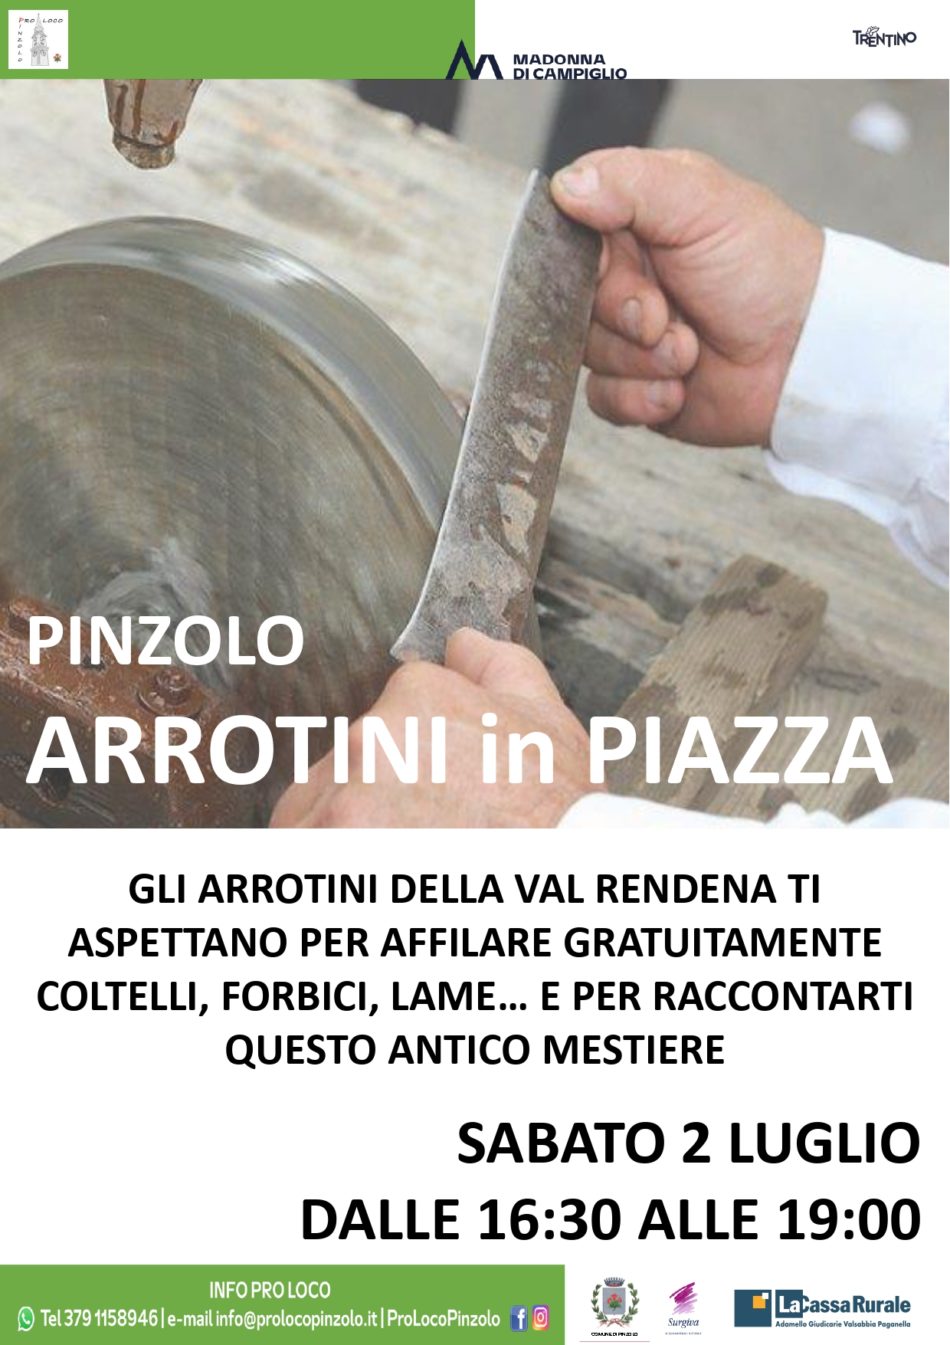 A Pinzolo il fine settimana sarà dedicato ai “Moleti”